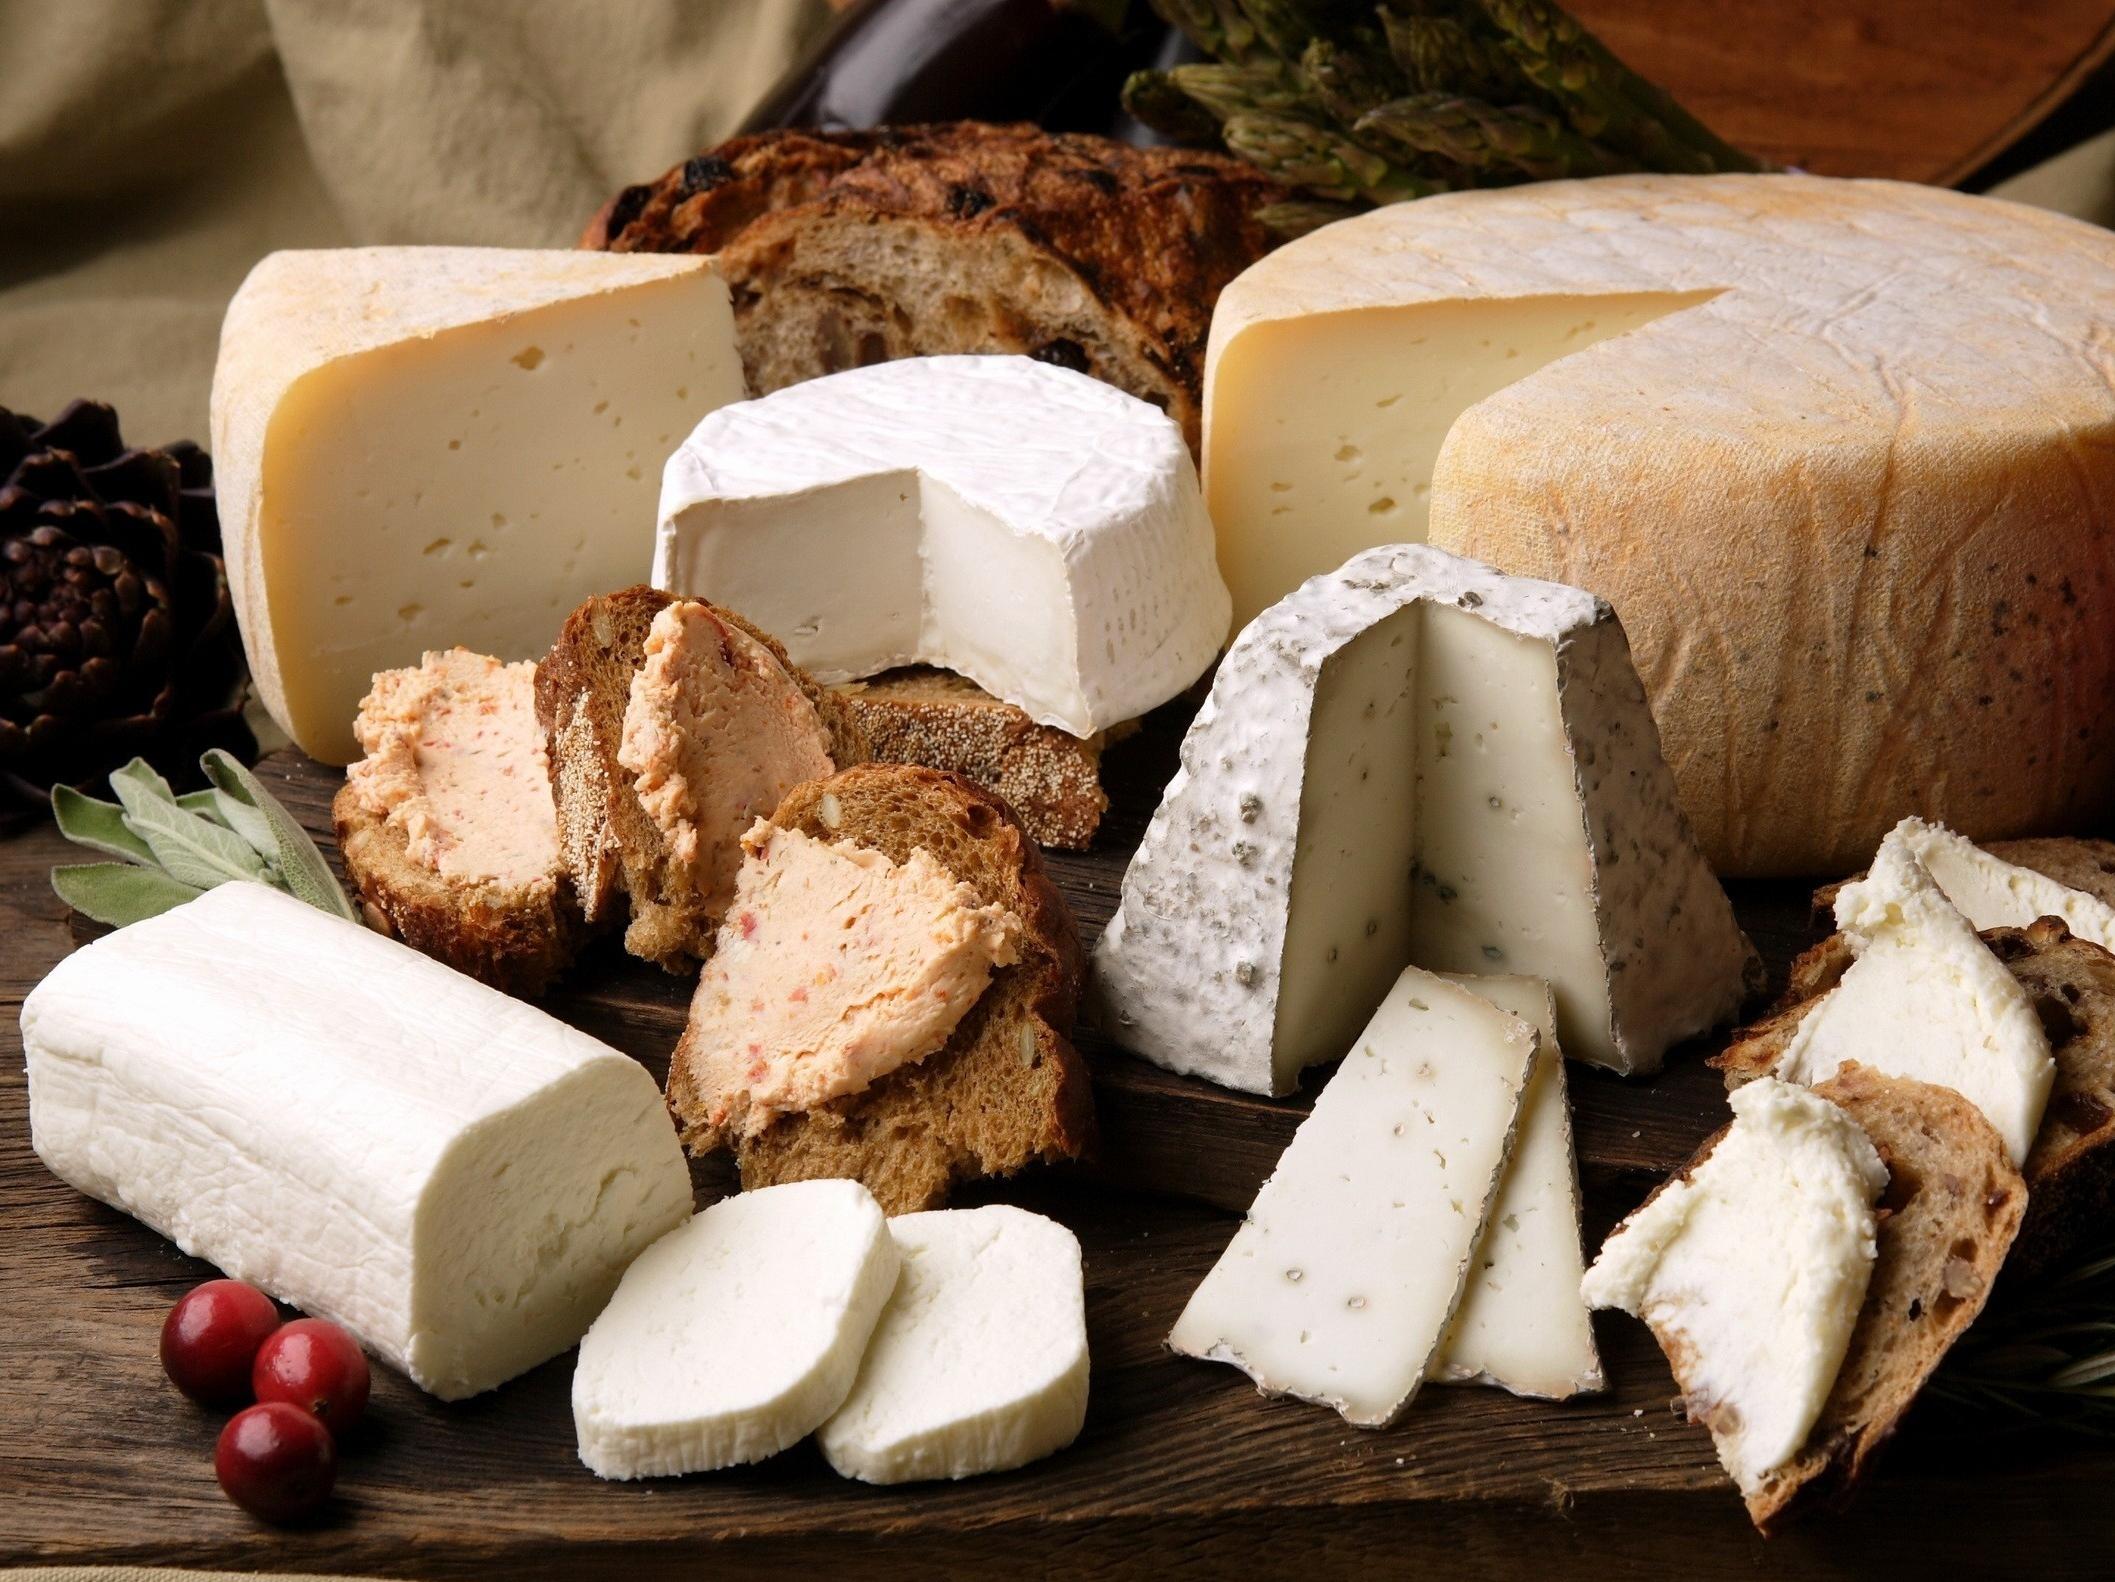 浓缩就是精华，精华就是奶酪，奶酪就是芝士，芝士就是力量！_哔哩哔哩 (゜-゜)つロ 干杯~-bilibili